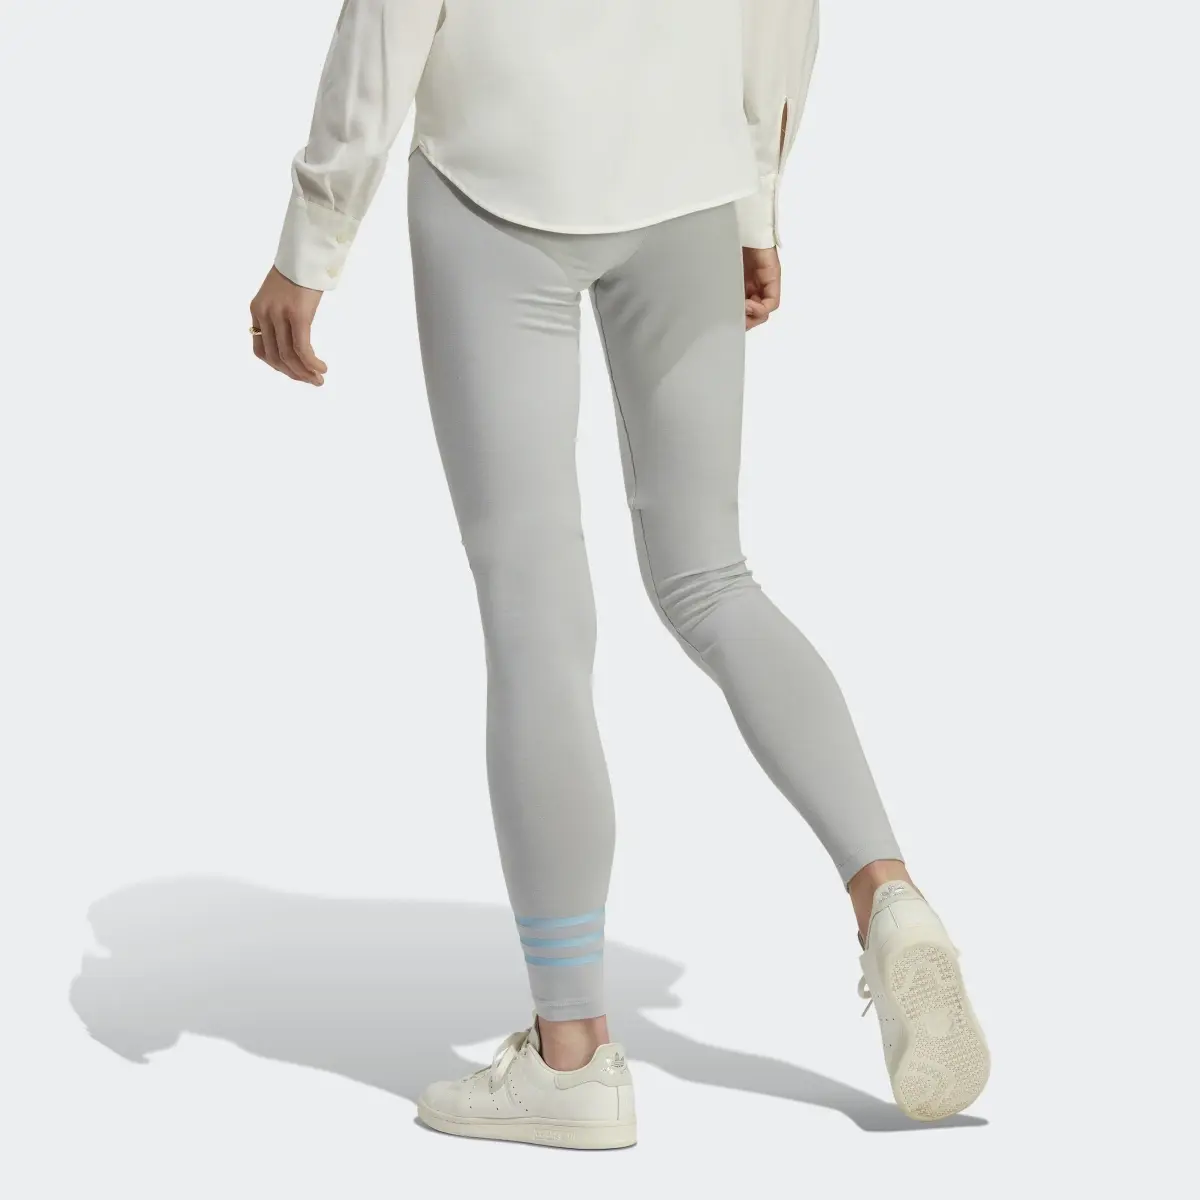 Adidas - Adicolor Neuclassics Full Length Leggings (Plus Size)